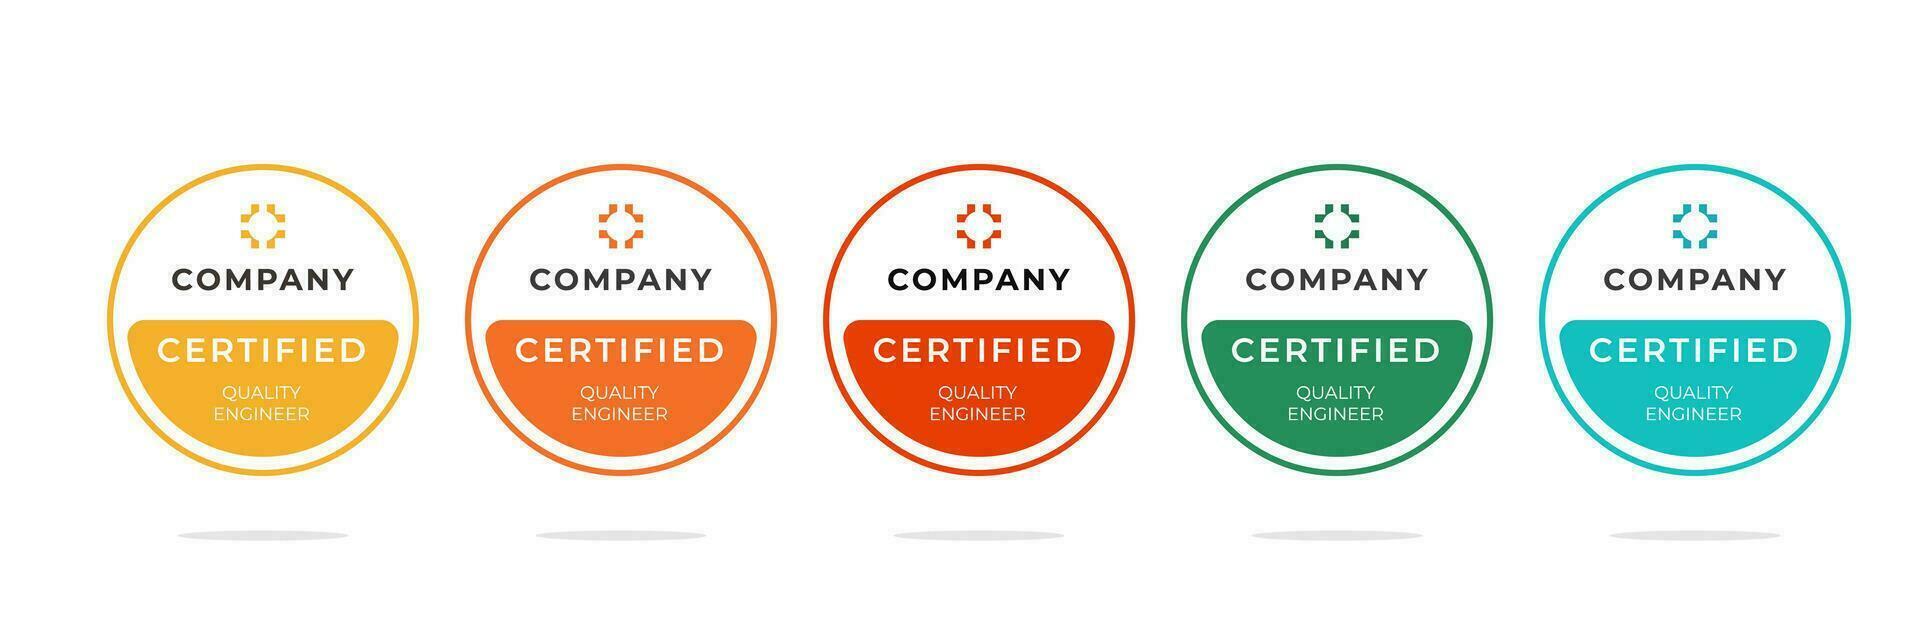 digitale certificato distintivo design per tecnico professionisti chi avere con successo passato un' certificazione esame. vettore illustrazione